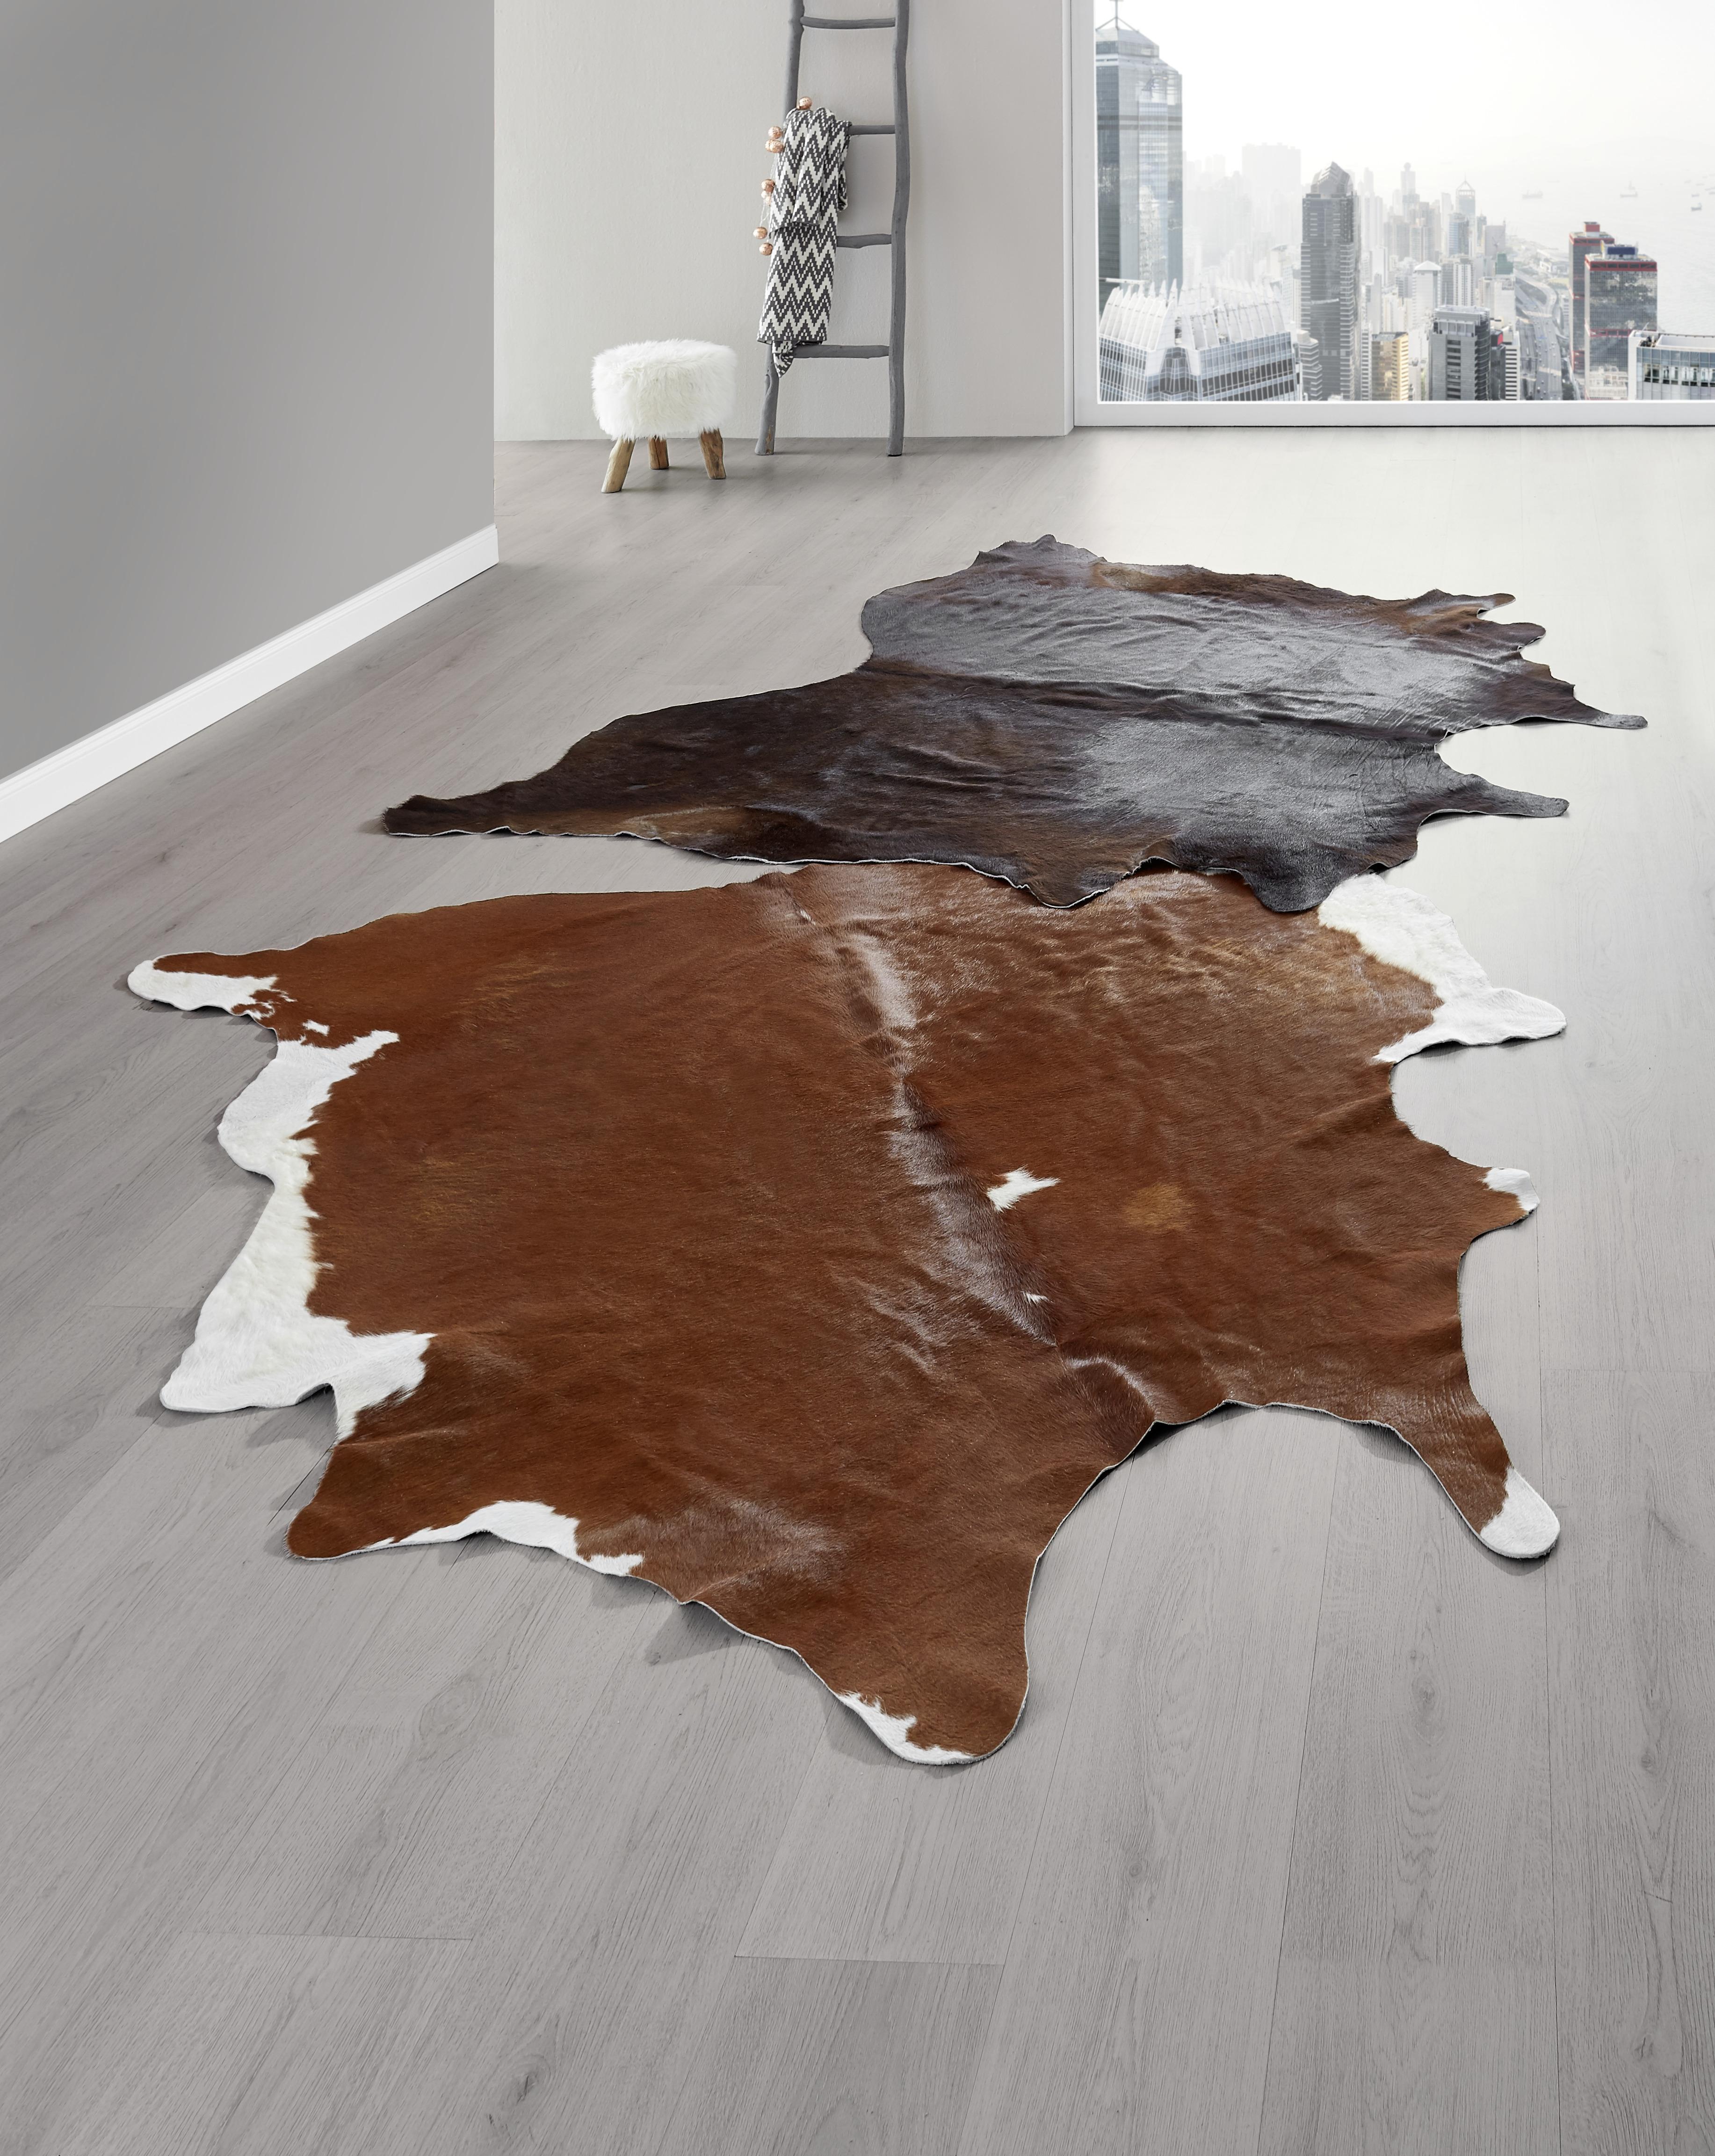 Hovězí Kůže Christoph, 2-4,5m2 - černá/hnědá, Moderní, textil - Modern Living